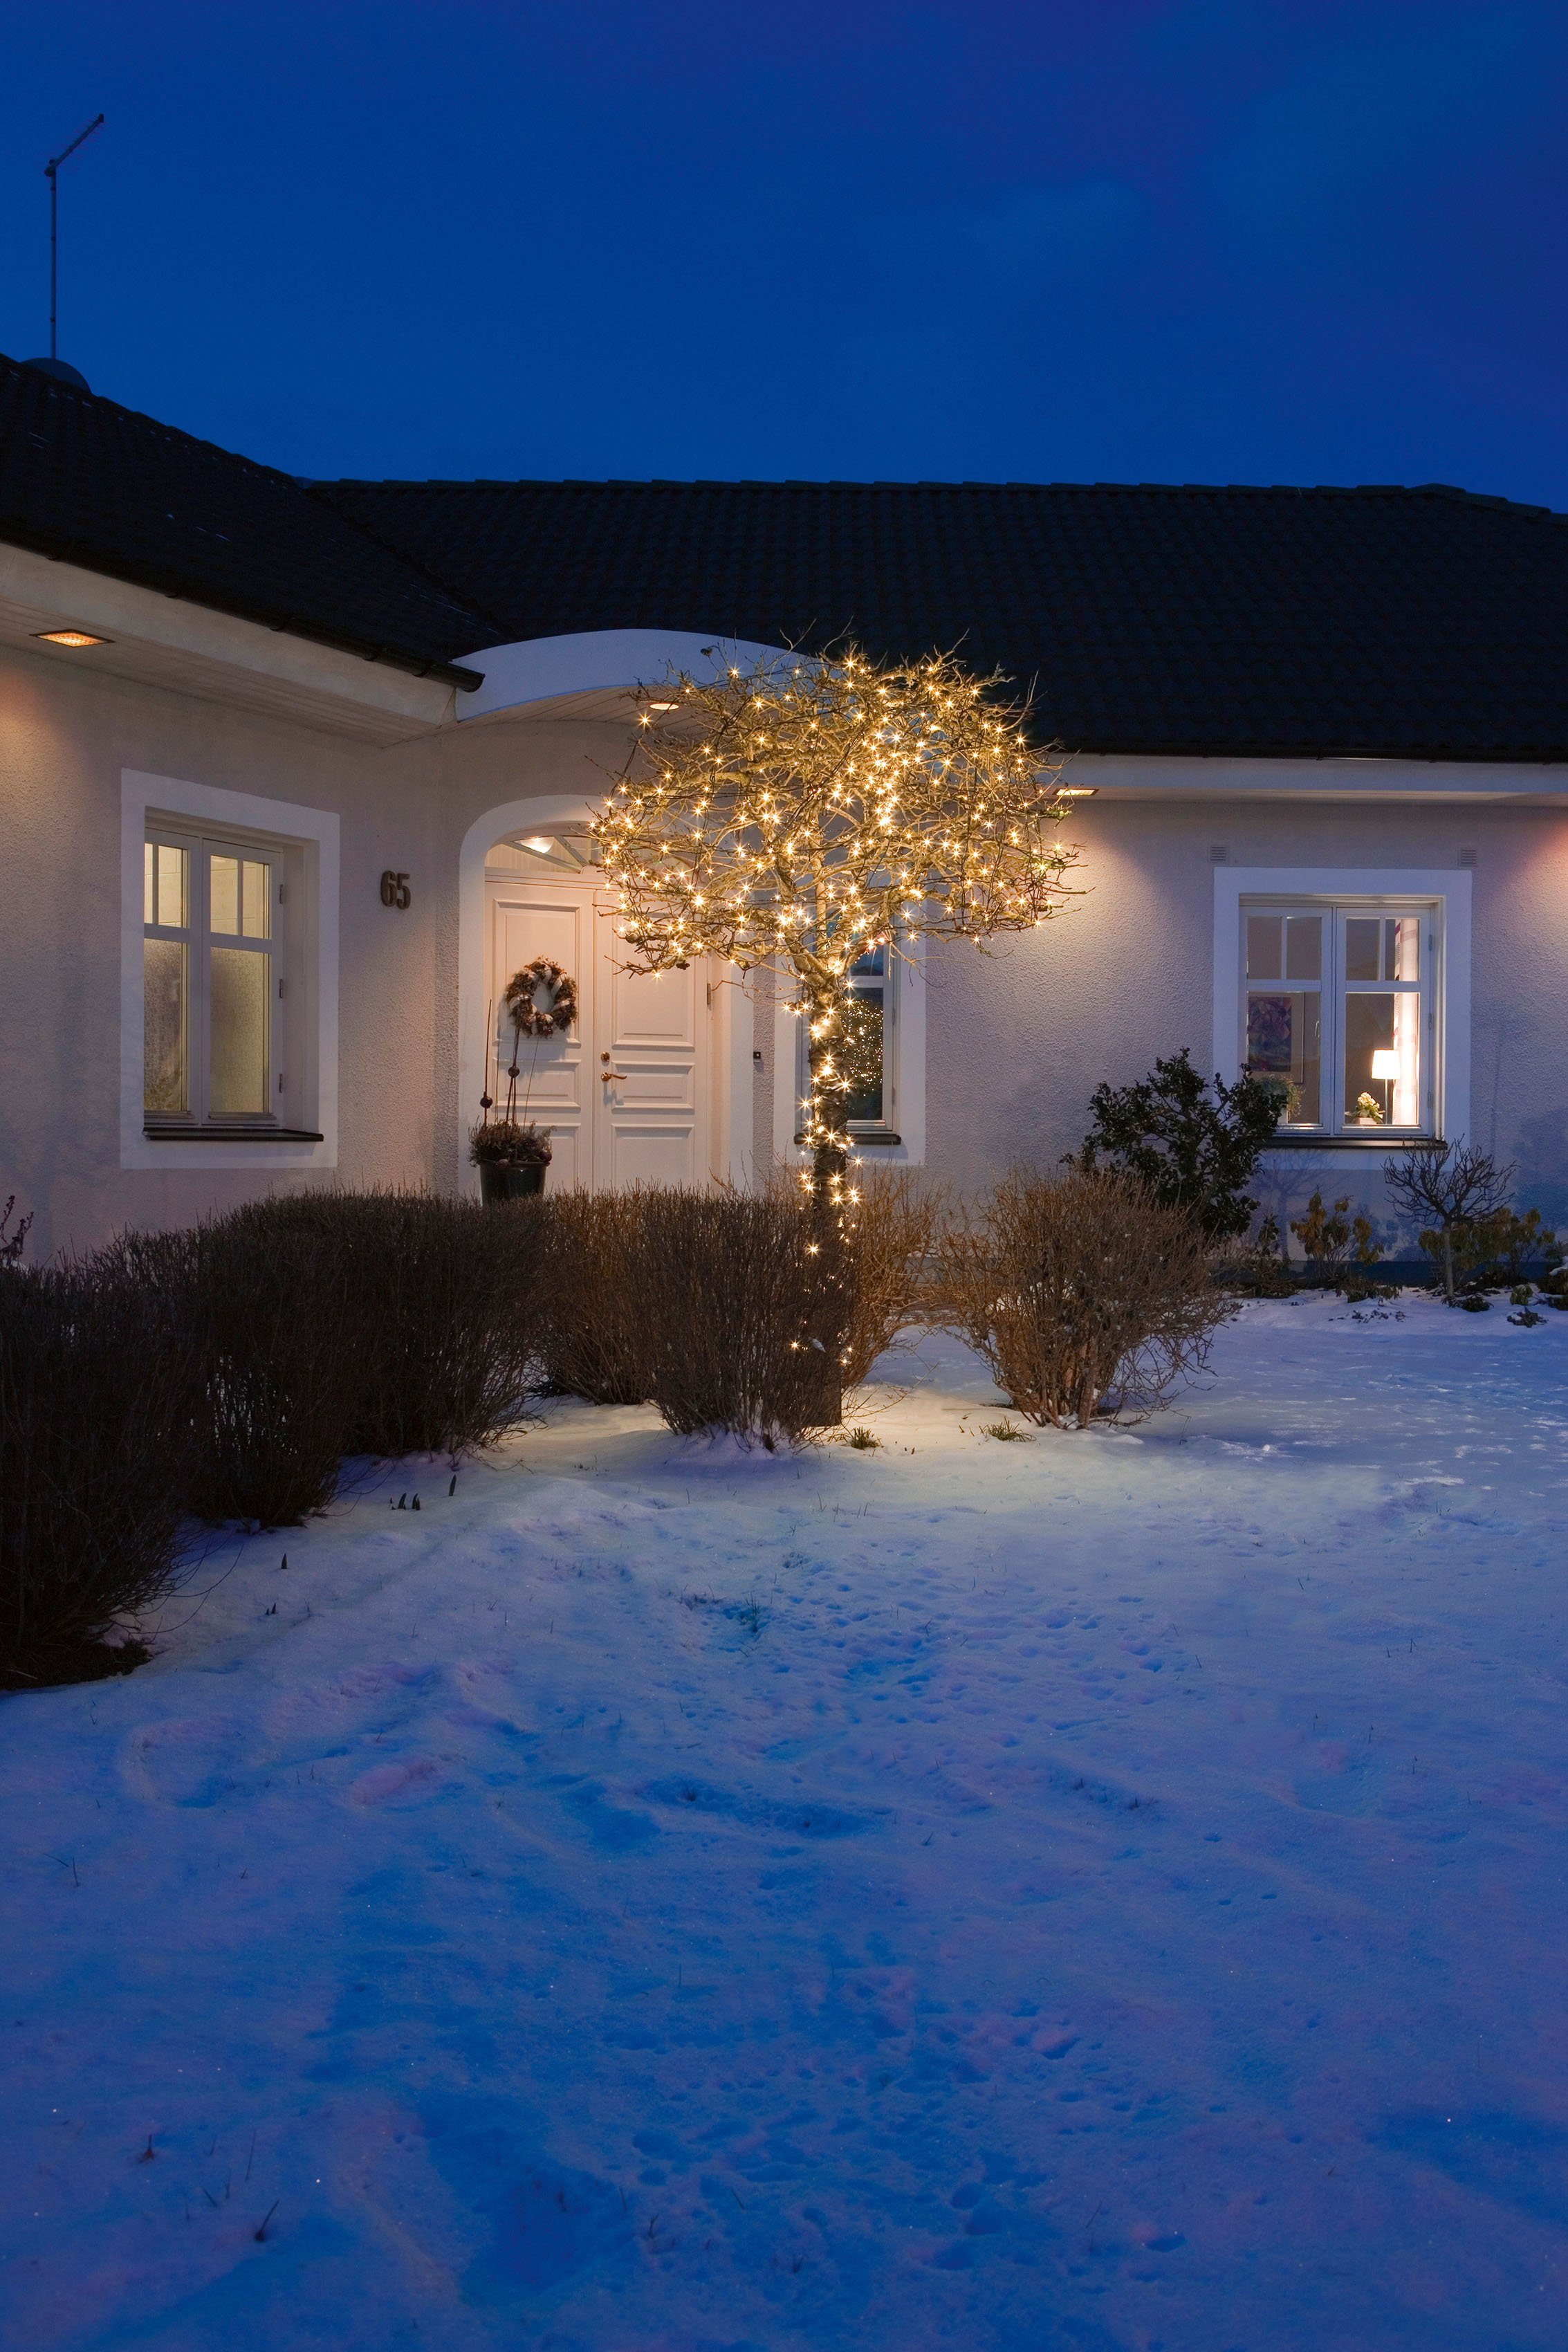 bernsteinfarbene Multifunktion, 120-flammig, LED-Lichterkette LED aussen, mit Micro 120 KONSTSMIDE Dioden Lichterkette, Weihnachtsdeko